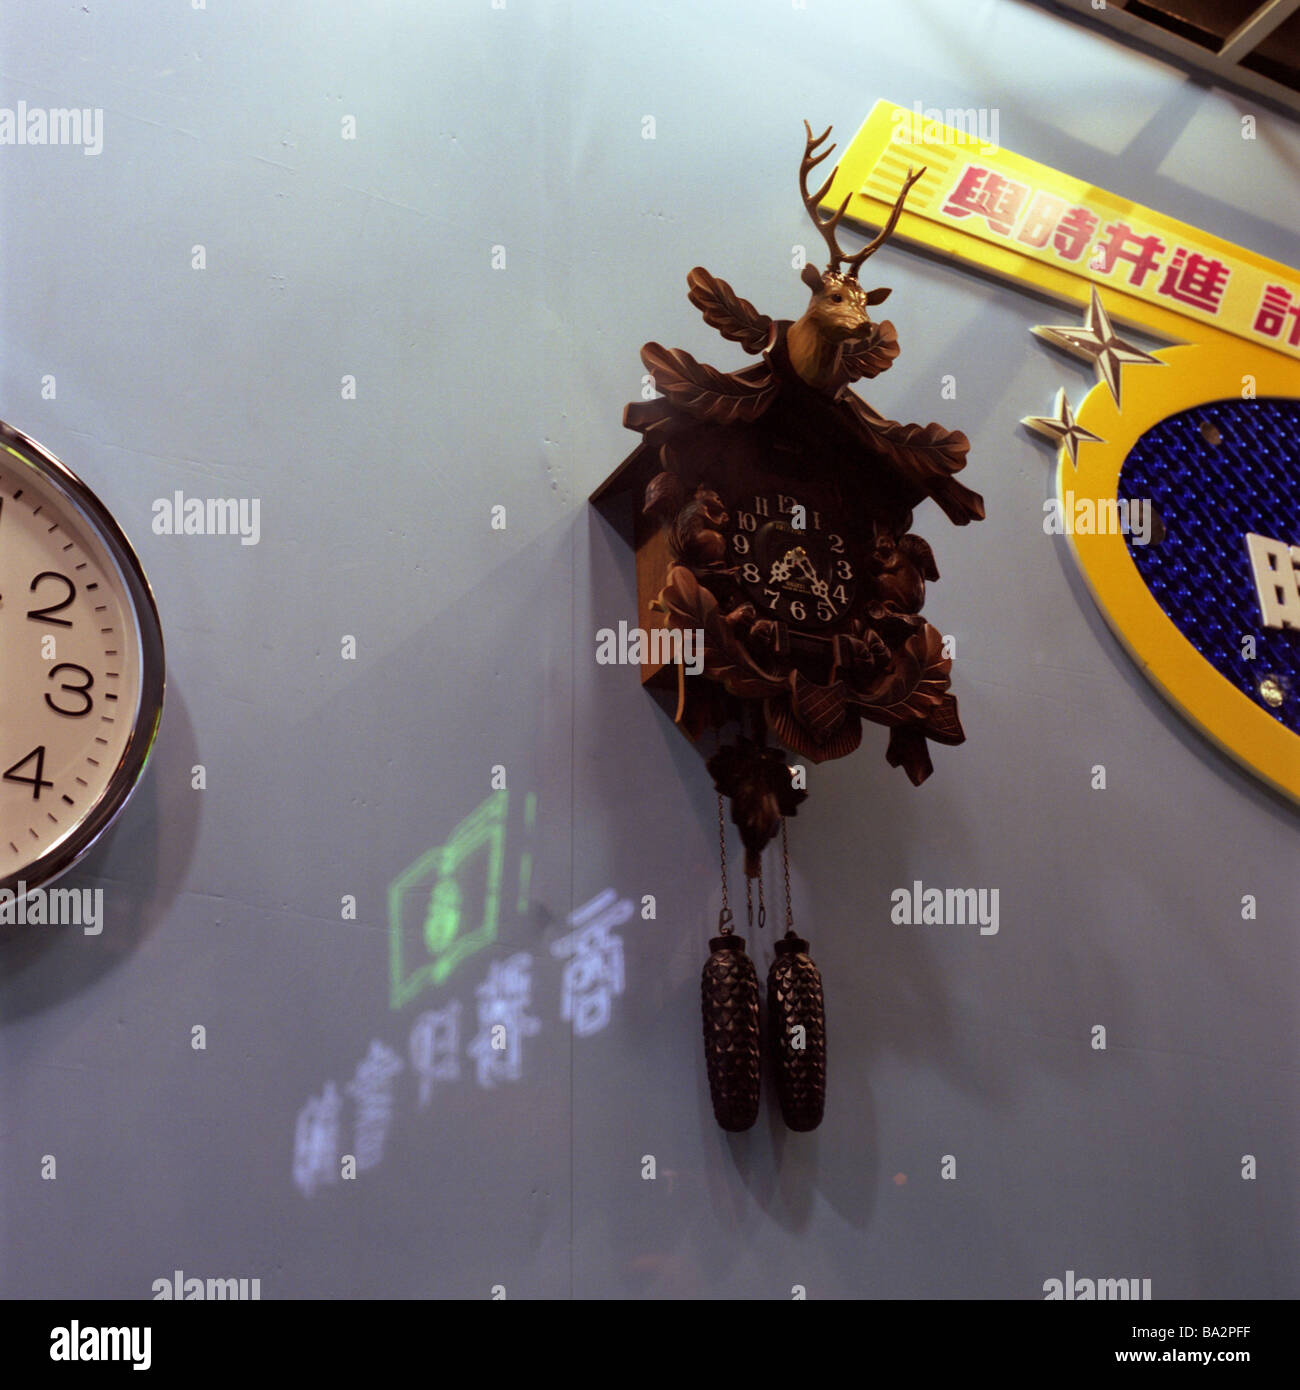 China Hong Kong department store wall detail clocks cuckoo-clock characters Asian Asia Eastern Asia department store clock time Stock Photo